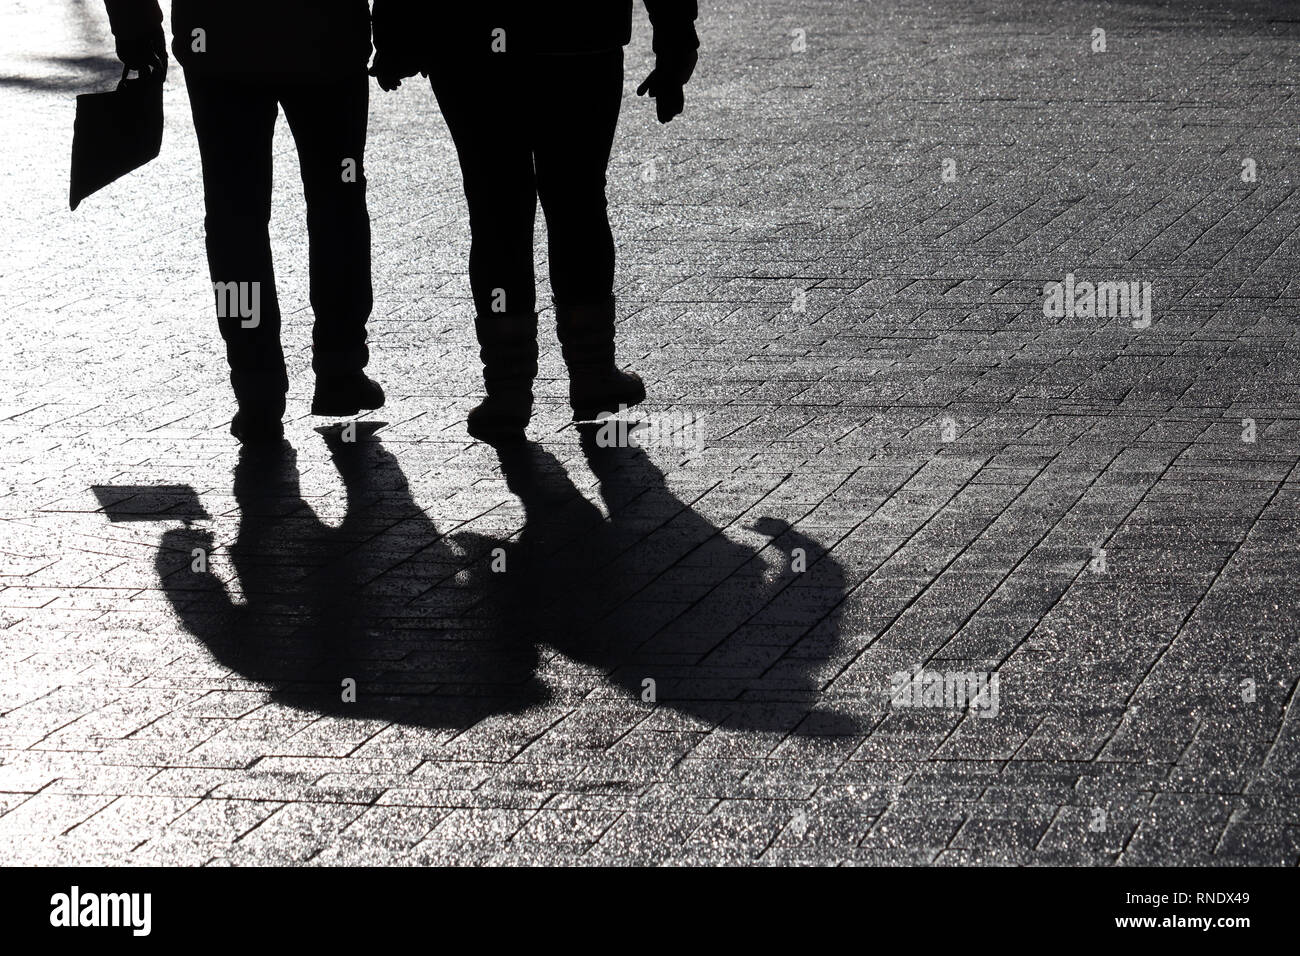 Silhouetten von zwei Menschen auf der Straße. Paar im Freien, Menschen Schatten auf Bürgersteig, Konzept für die dramatische Geschichten Stockfoto